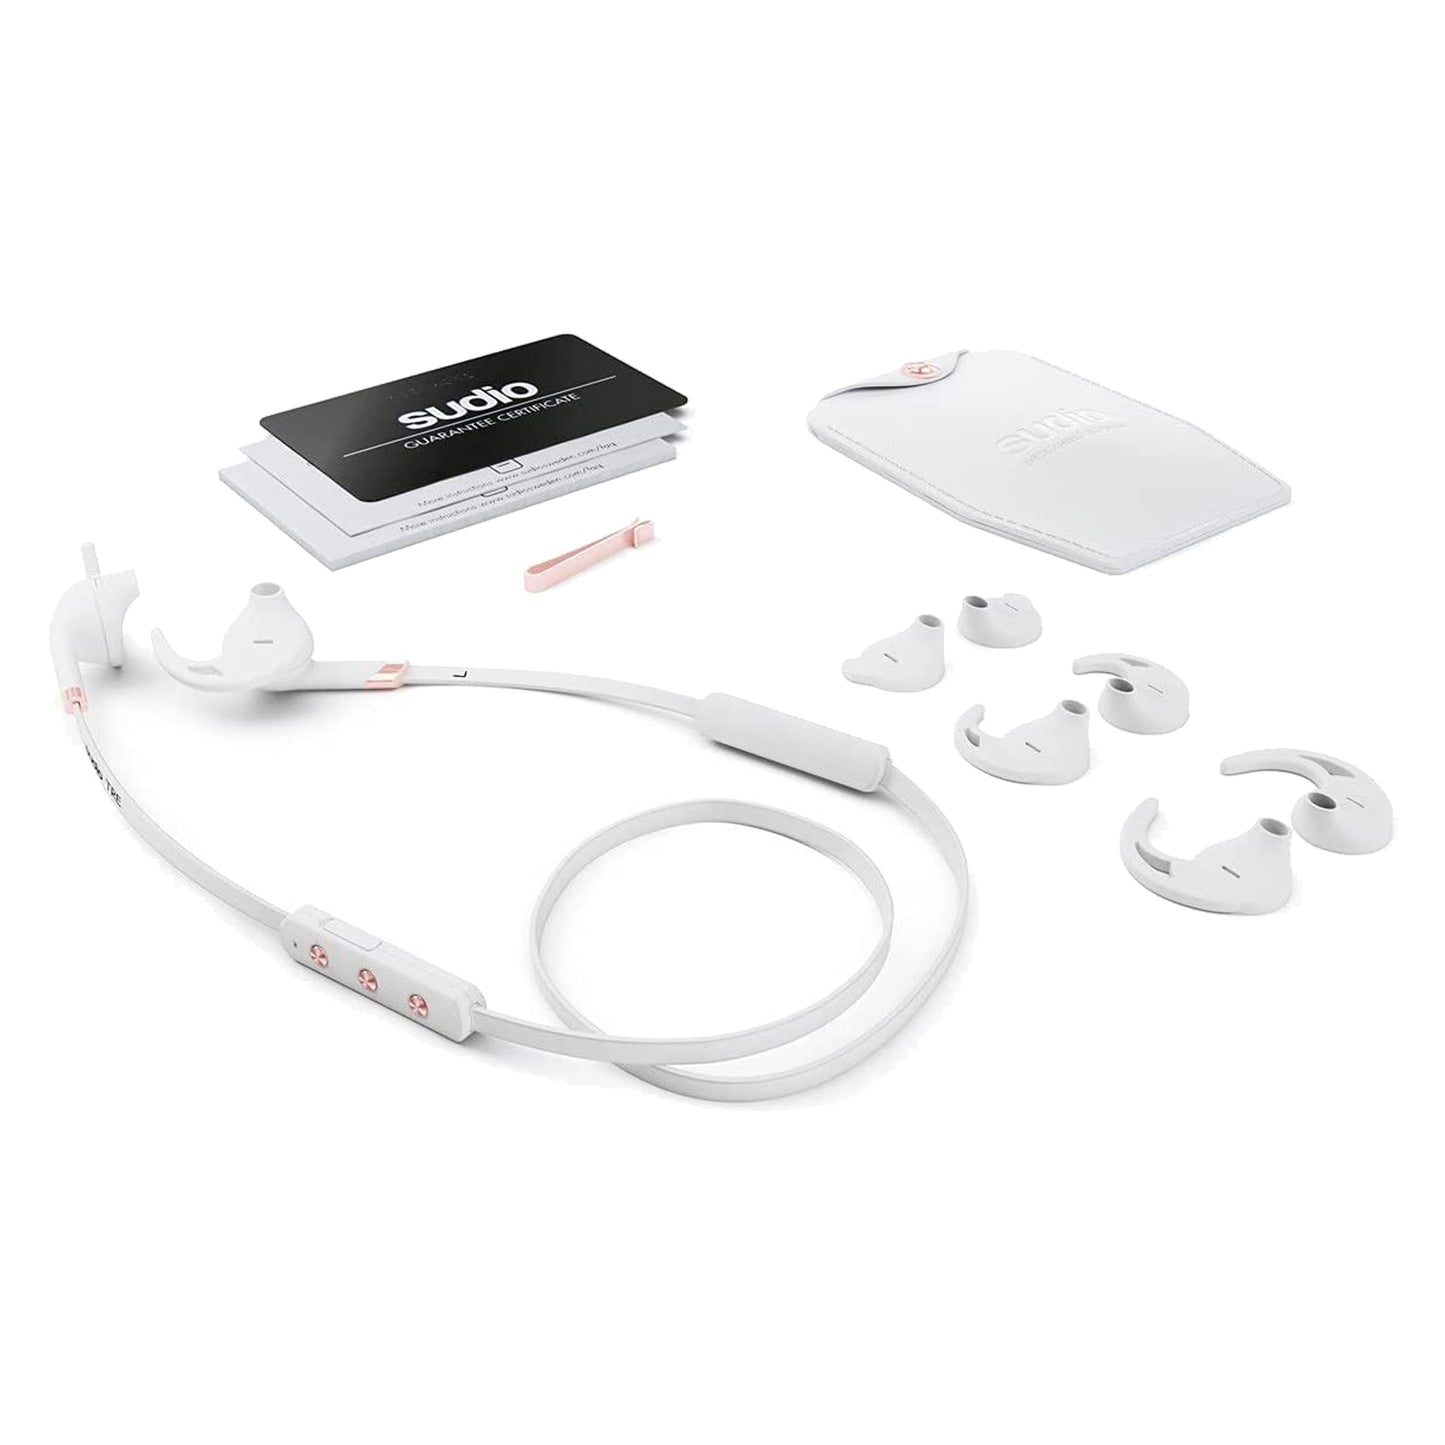 SUDIO TRE Bluetooth In-Ear - White (Barcode: 7350071380970 )